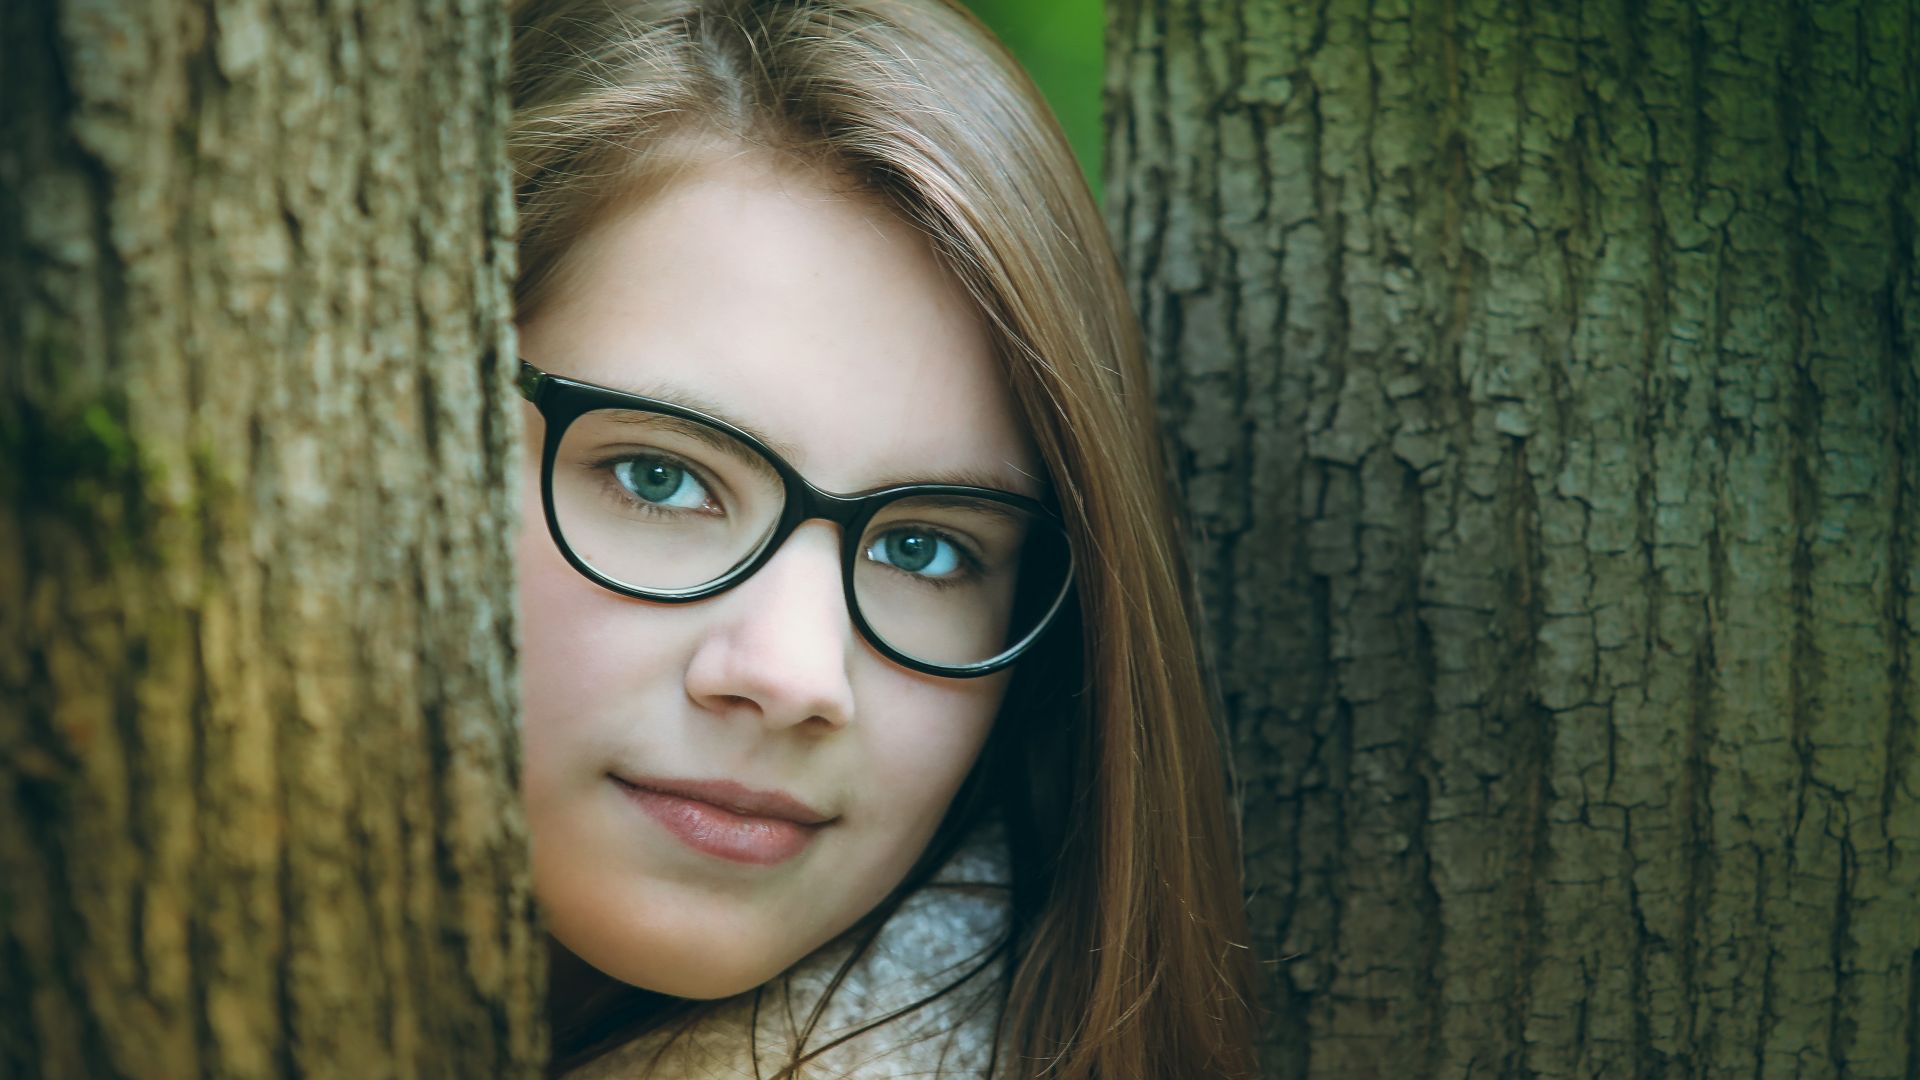 Wallpaper Young, girl model, brunette, tree trunks, glasses